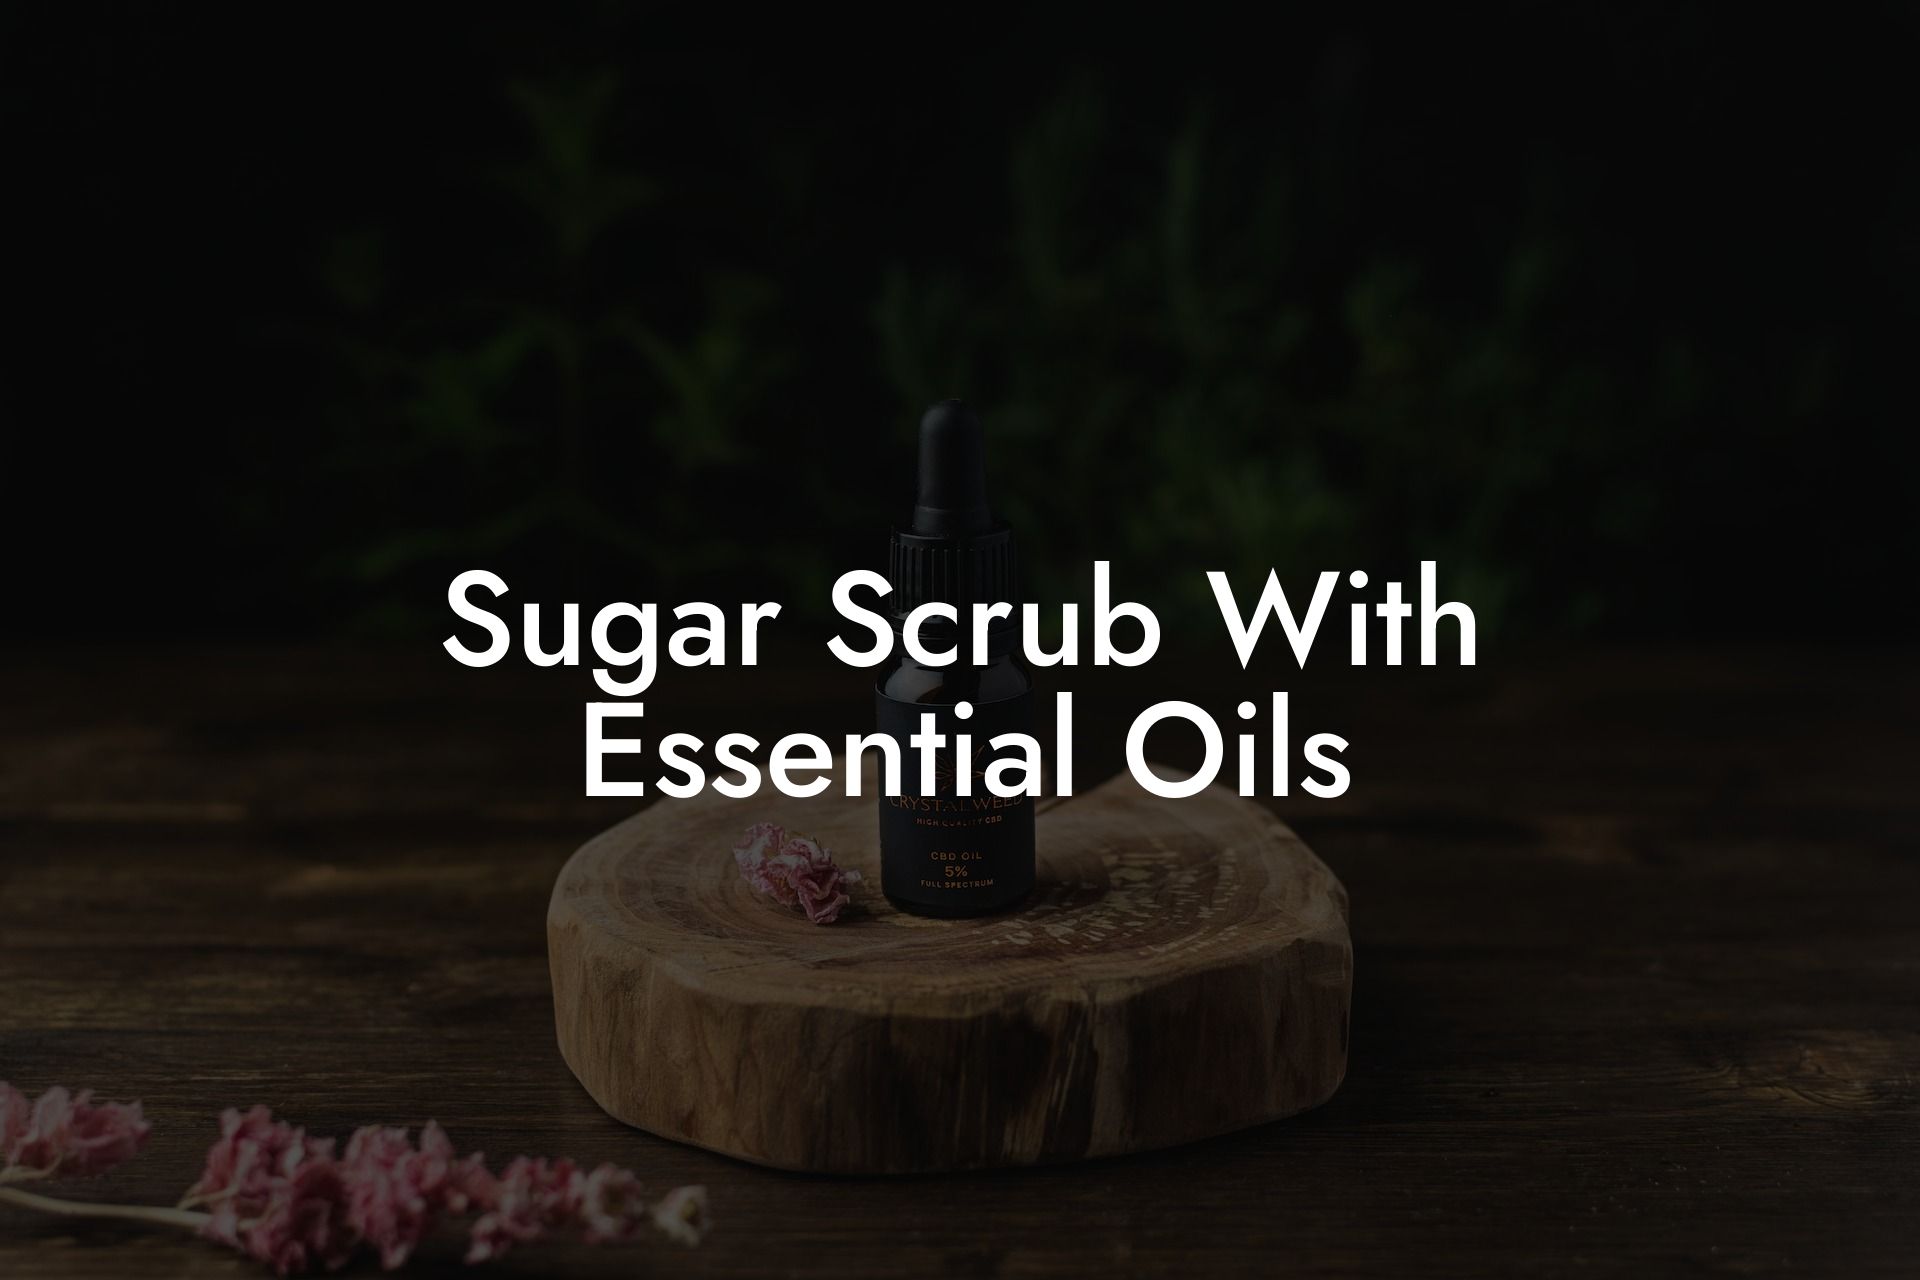 Sugar Scrub With Essential Oils